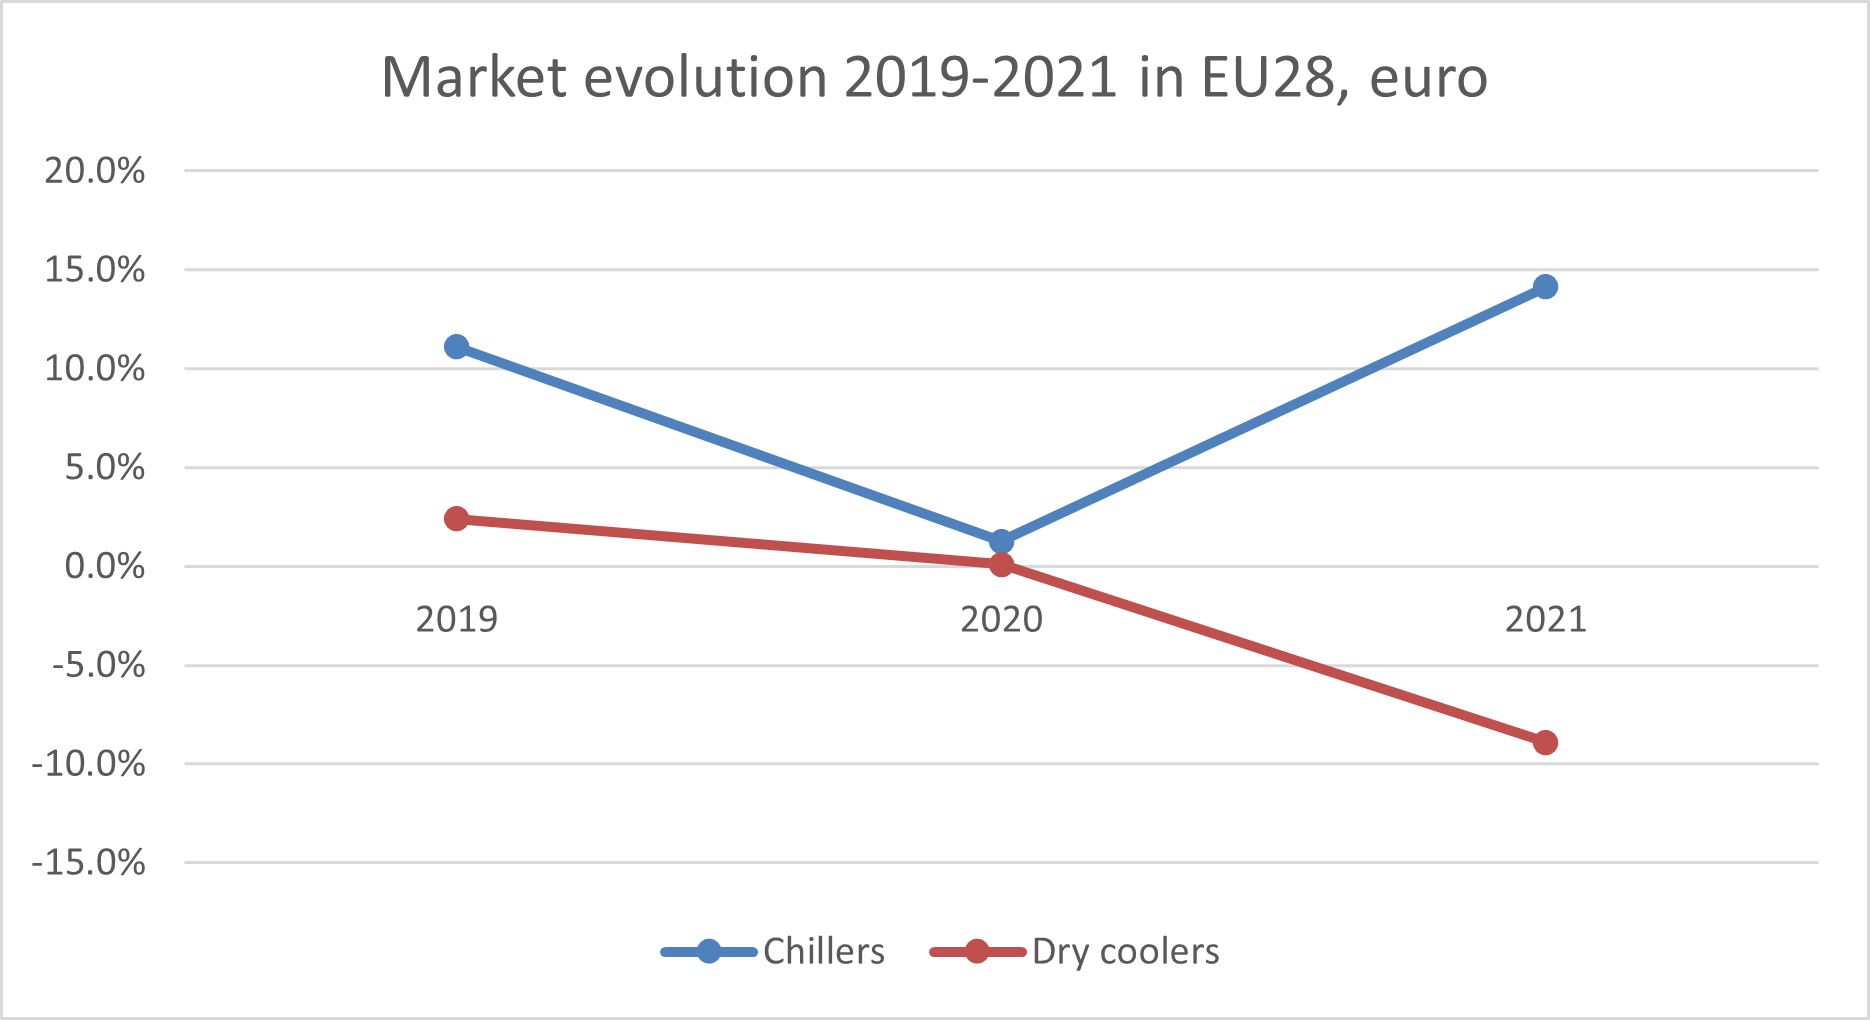 Динамика продаж чиллеров и сухих охладителей в ЕС28, 2019-2021 годы, по данным Eurovent Market intelligence